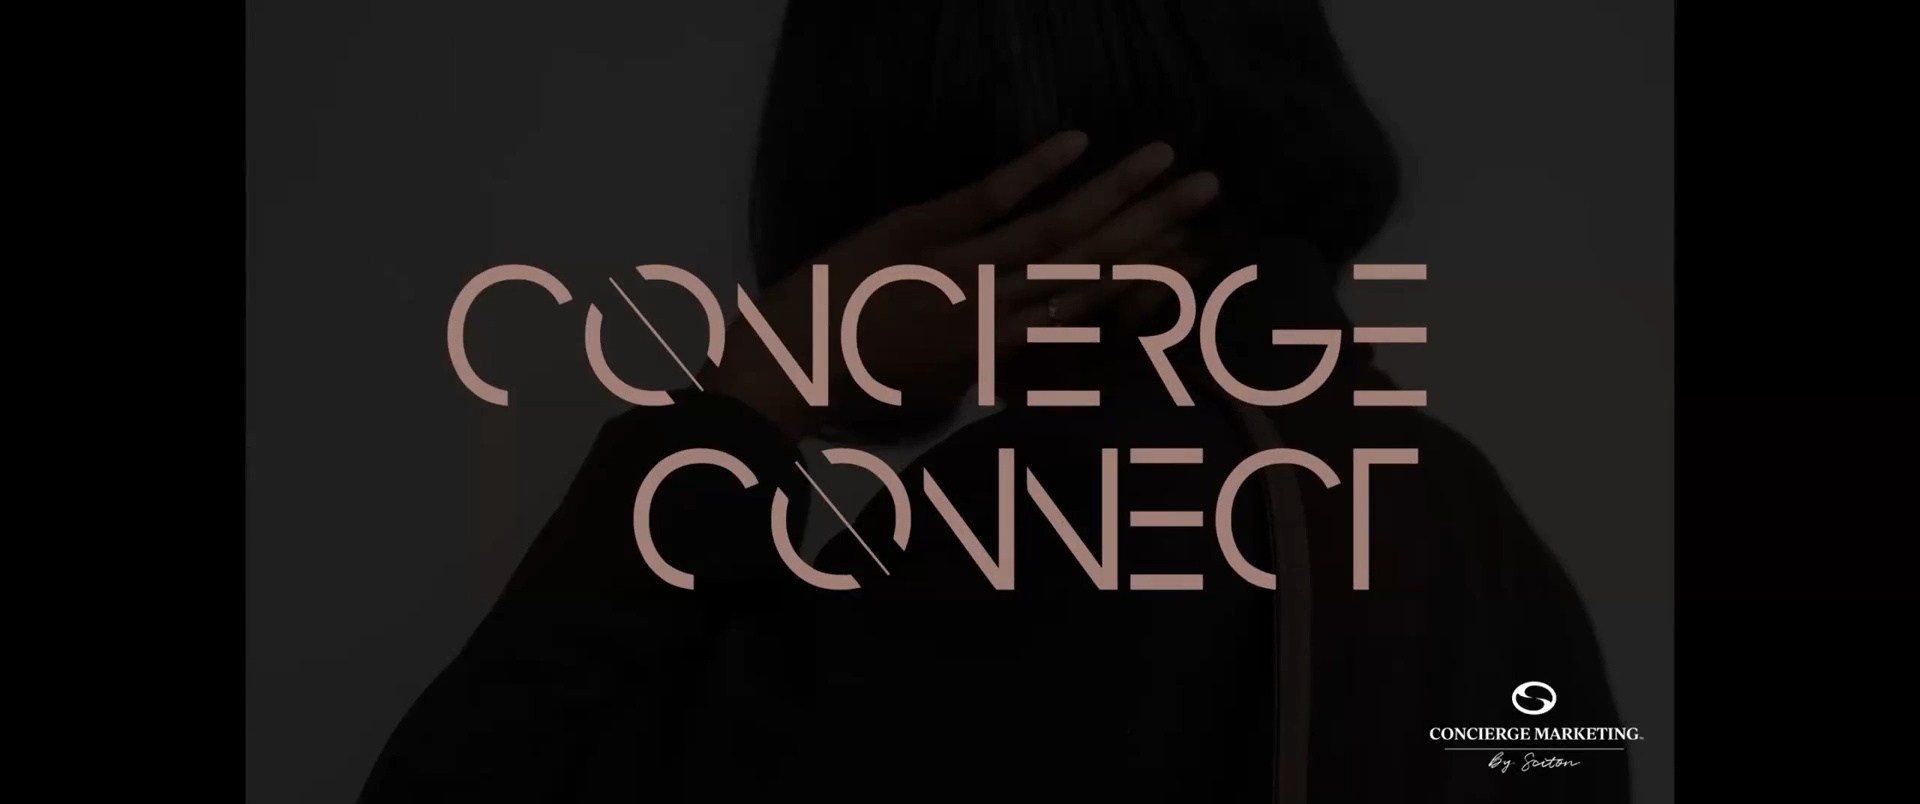 Thumbnail for Concierge Connect